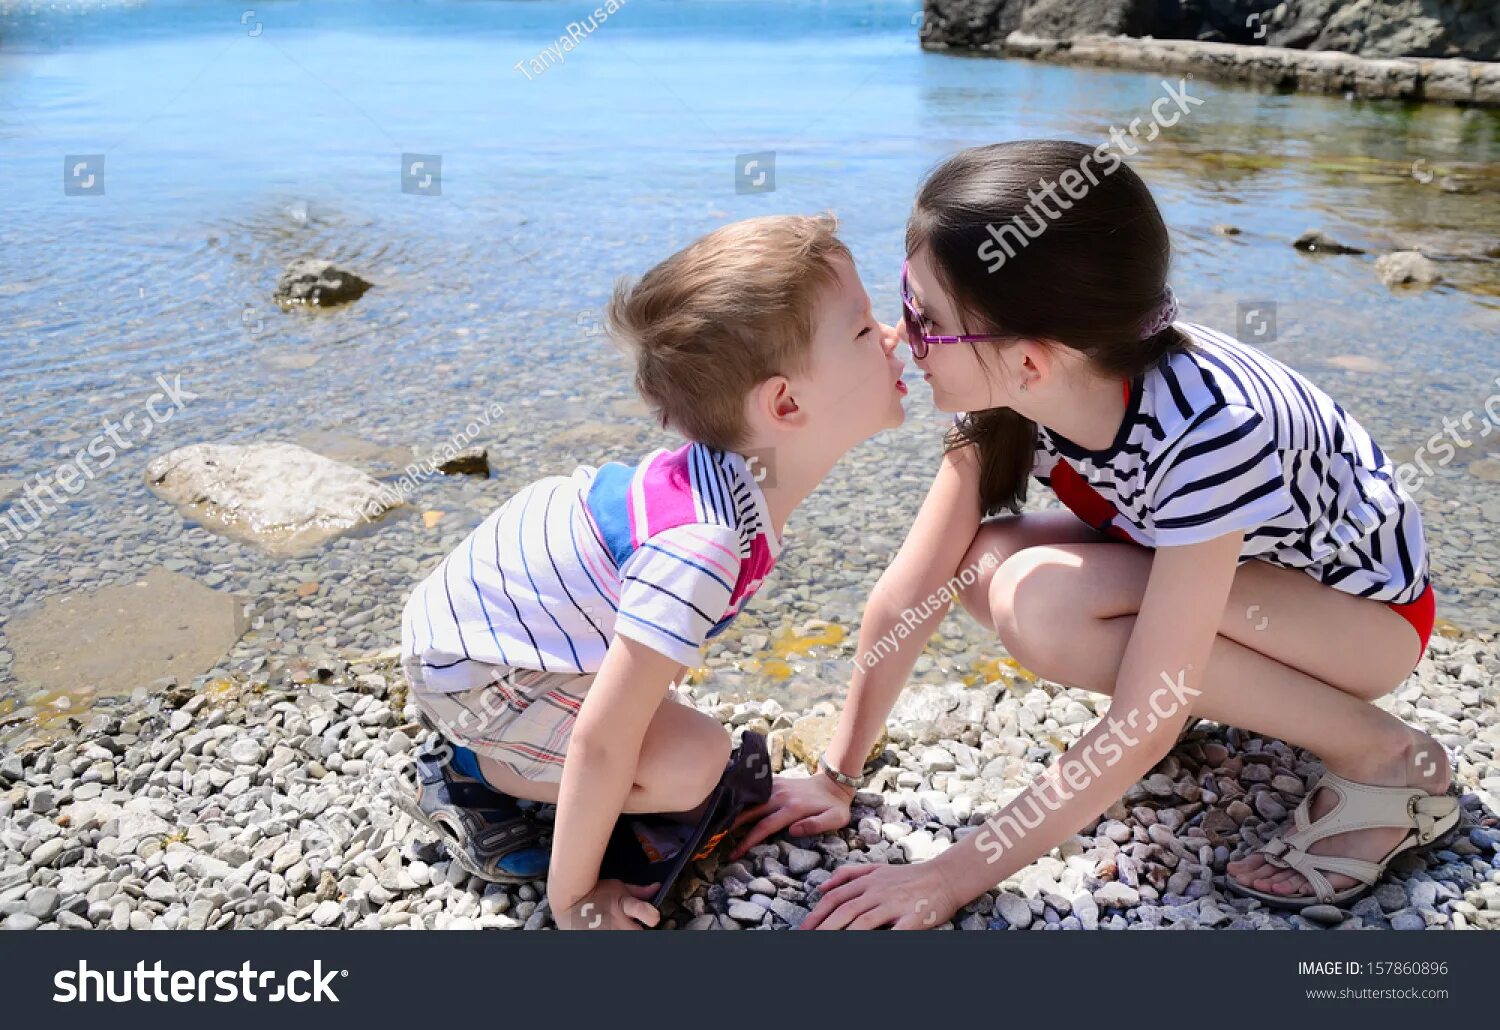 Сестрички на пляжу лет 10. Маленький мальчик и девочка занимаются. Брат и сестра целуются. Поцелуй в 10 лет. Брат трогает киску